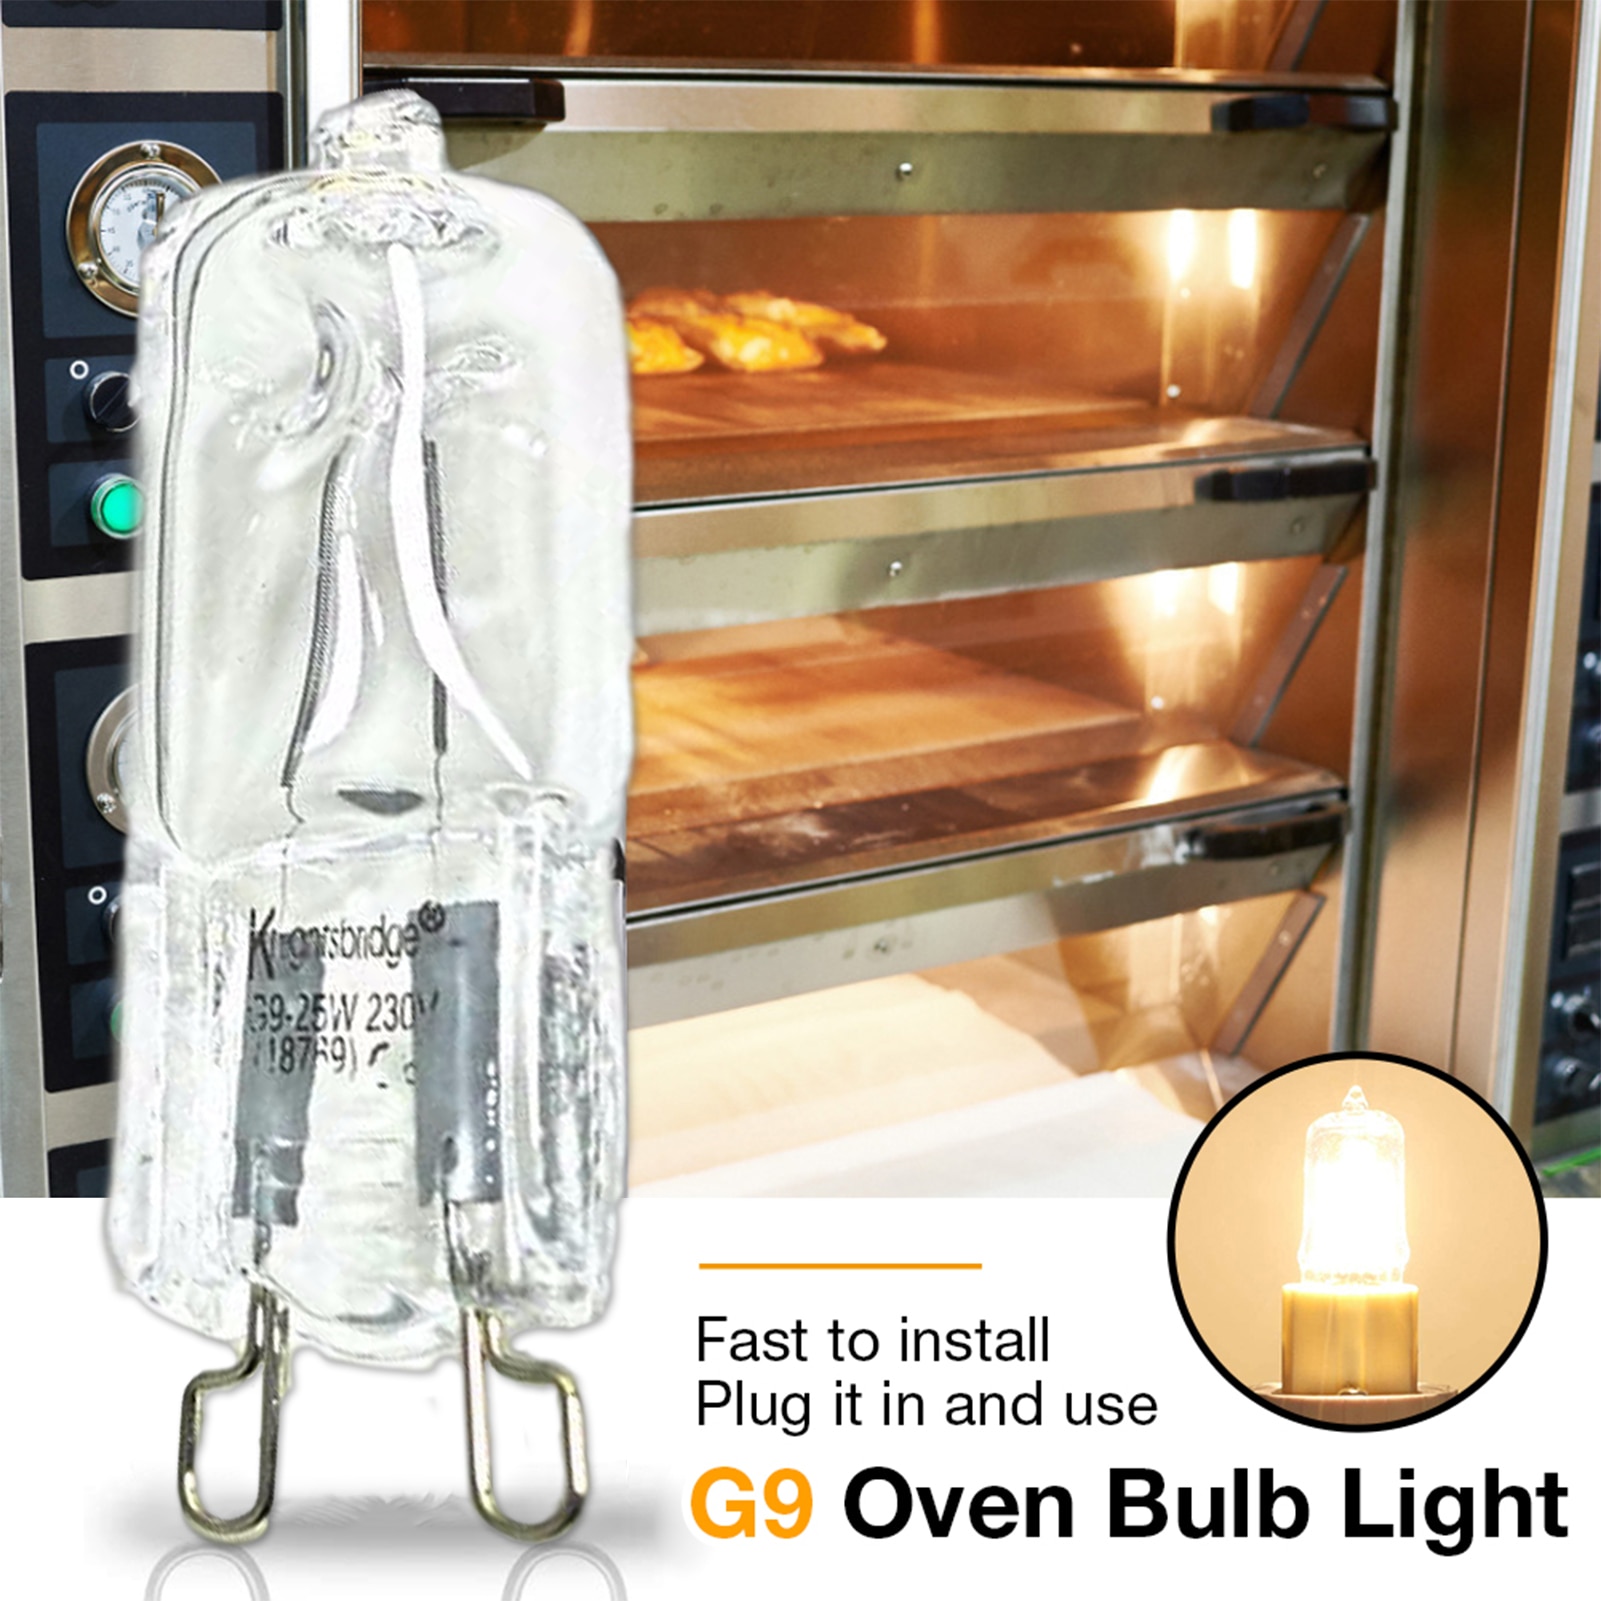 40W G9 Oven Licht Hittebestendige Duurzaam Halogeen Lamp Voor Koelkasten Ovens Fans